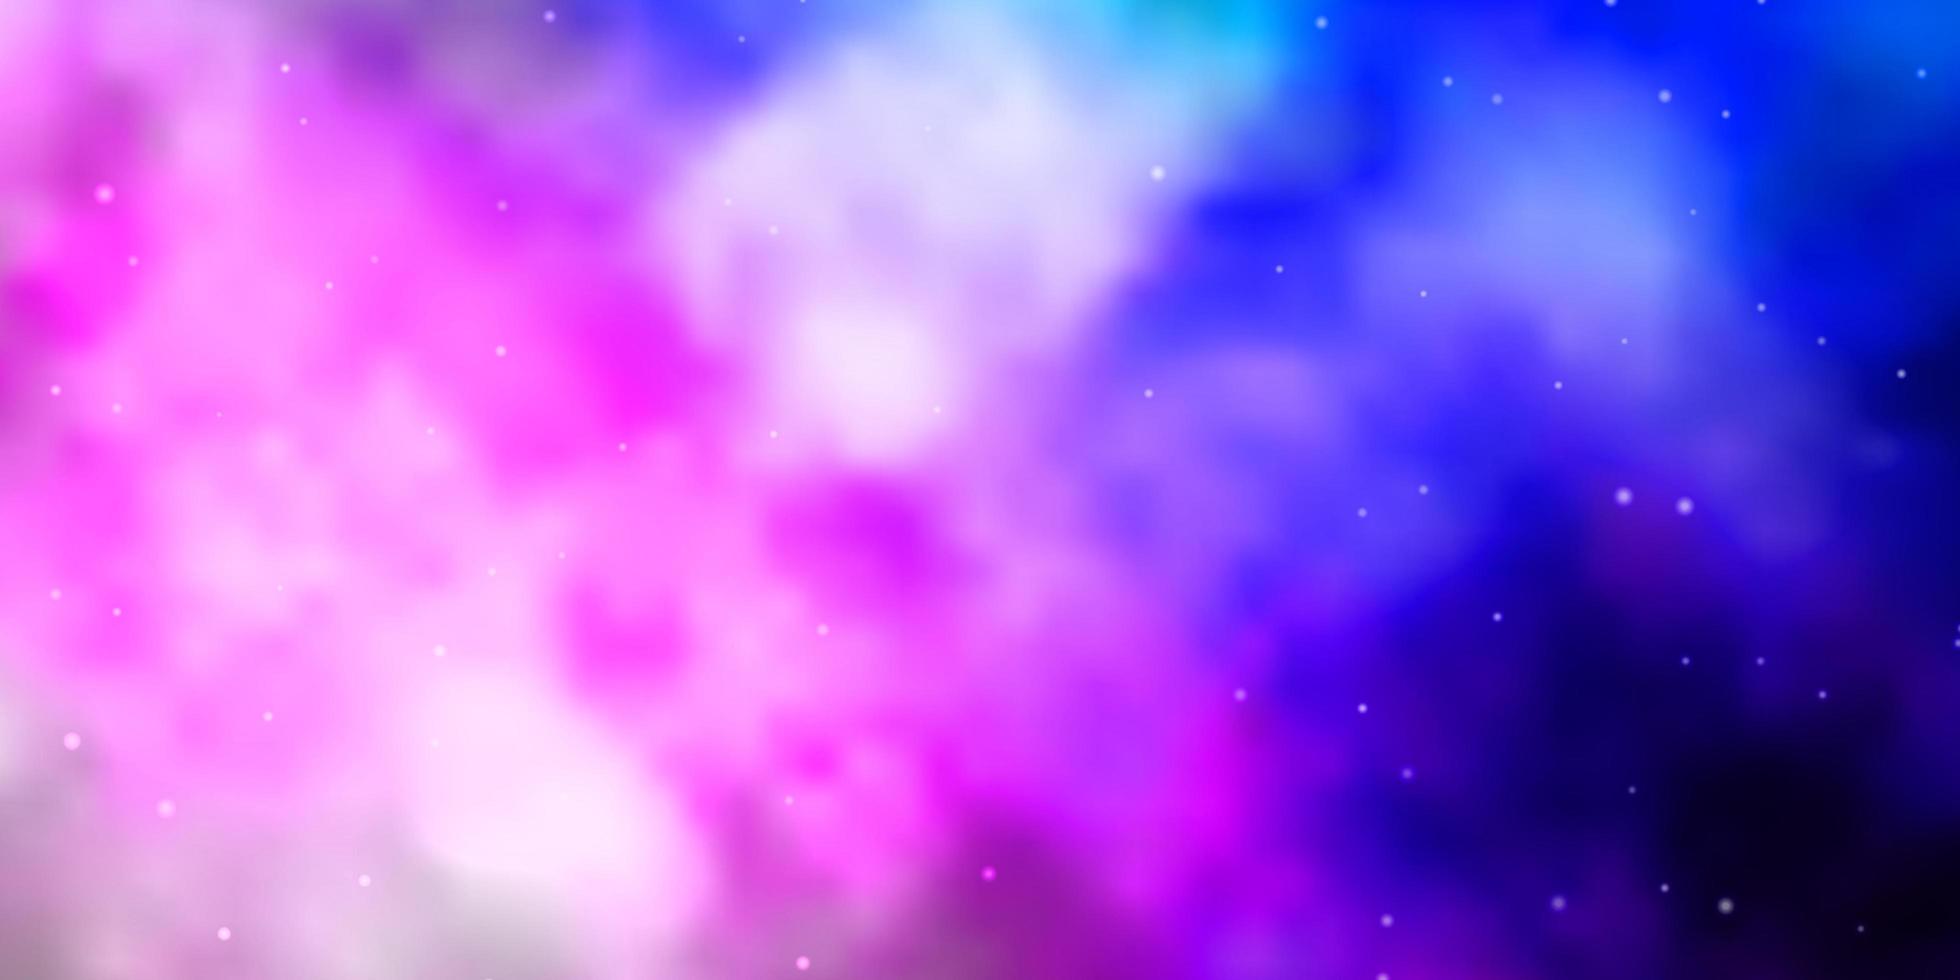 sfondo vettoriale rosa chiaro, blu con stelle piccole e grandi.